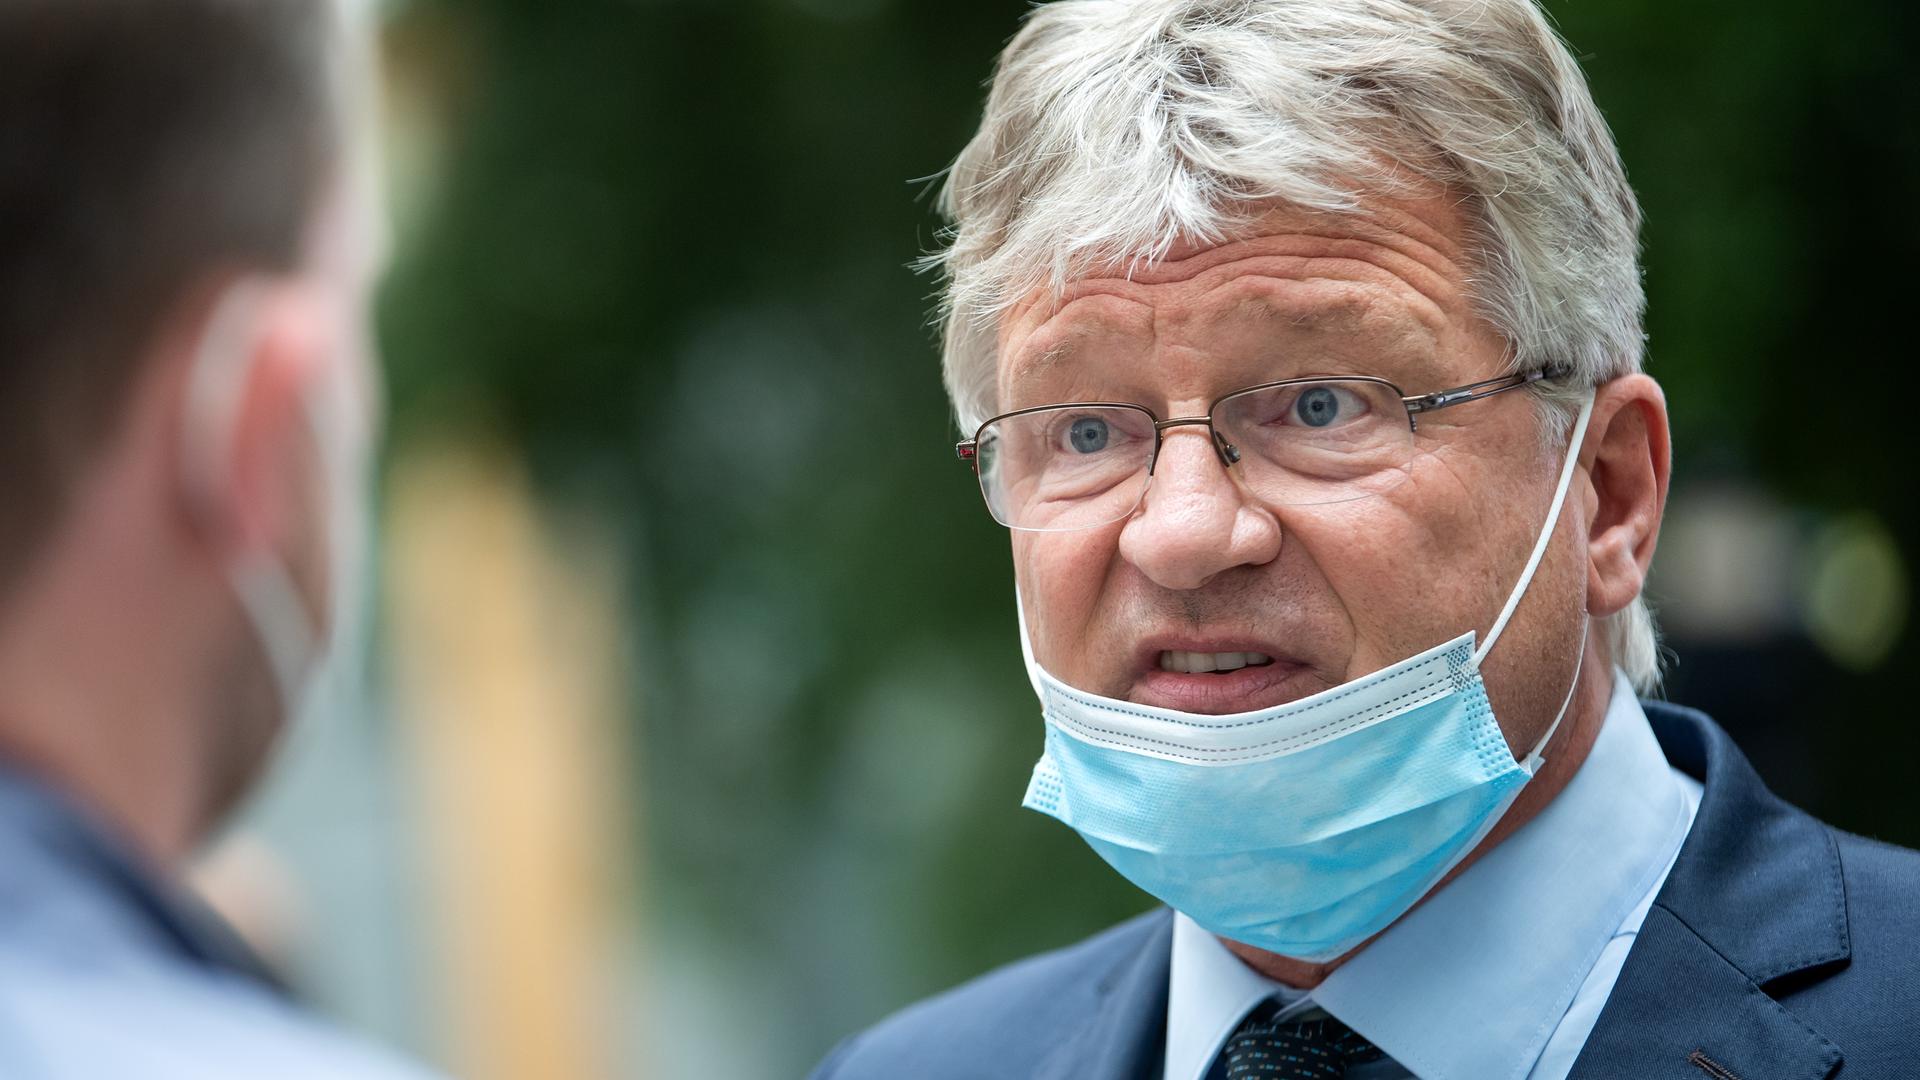 Der ehemalige AfD-Bundesvorsitzende Jörg Meuthen unterhält sich. Er hat eine OP-Maske auf.